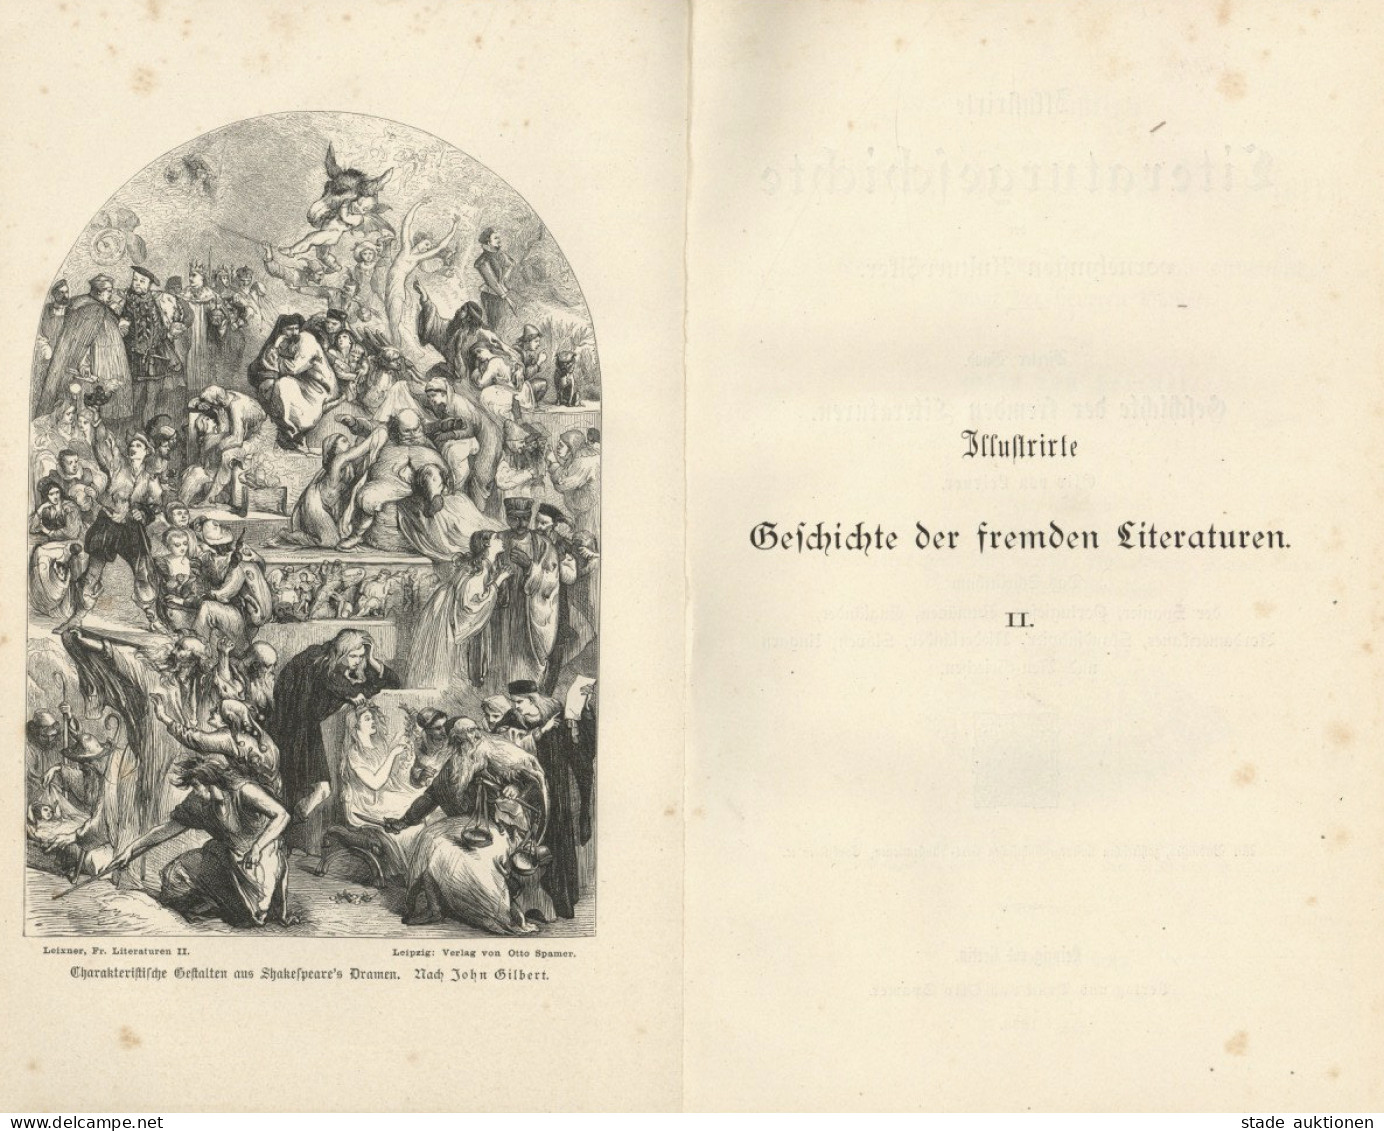 Buch Lot Mit 2 Büchern Illustrierte Geschichte Der Fremden Literaturen Band I Ud II Von Leixner, Otto 1883, Verlag Spame - Libri Vecchi E Da Collezione